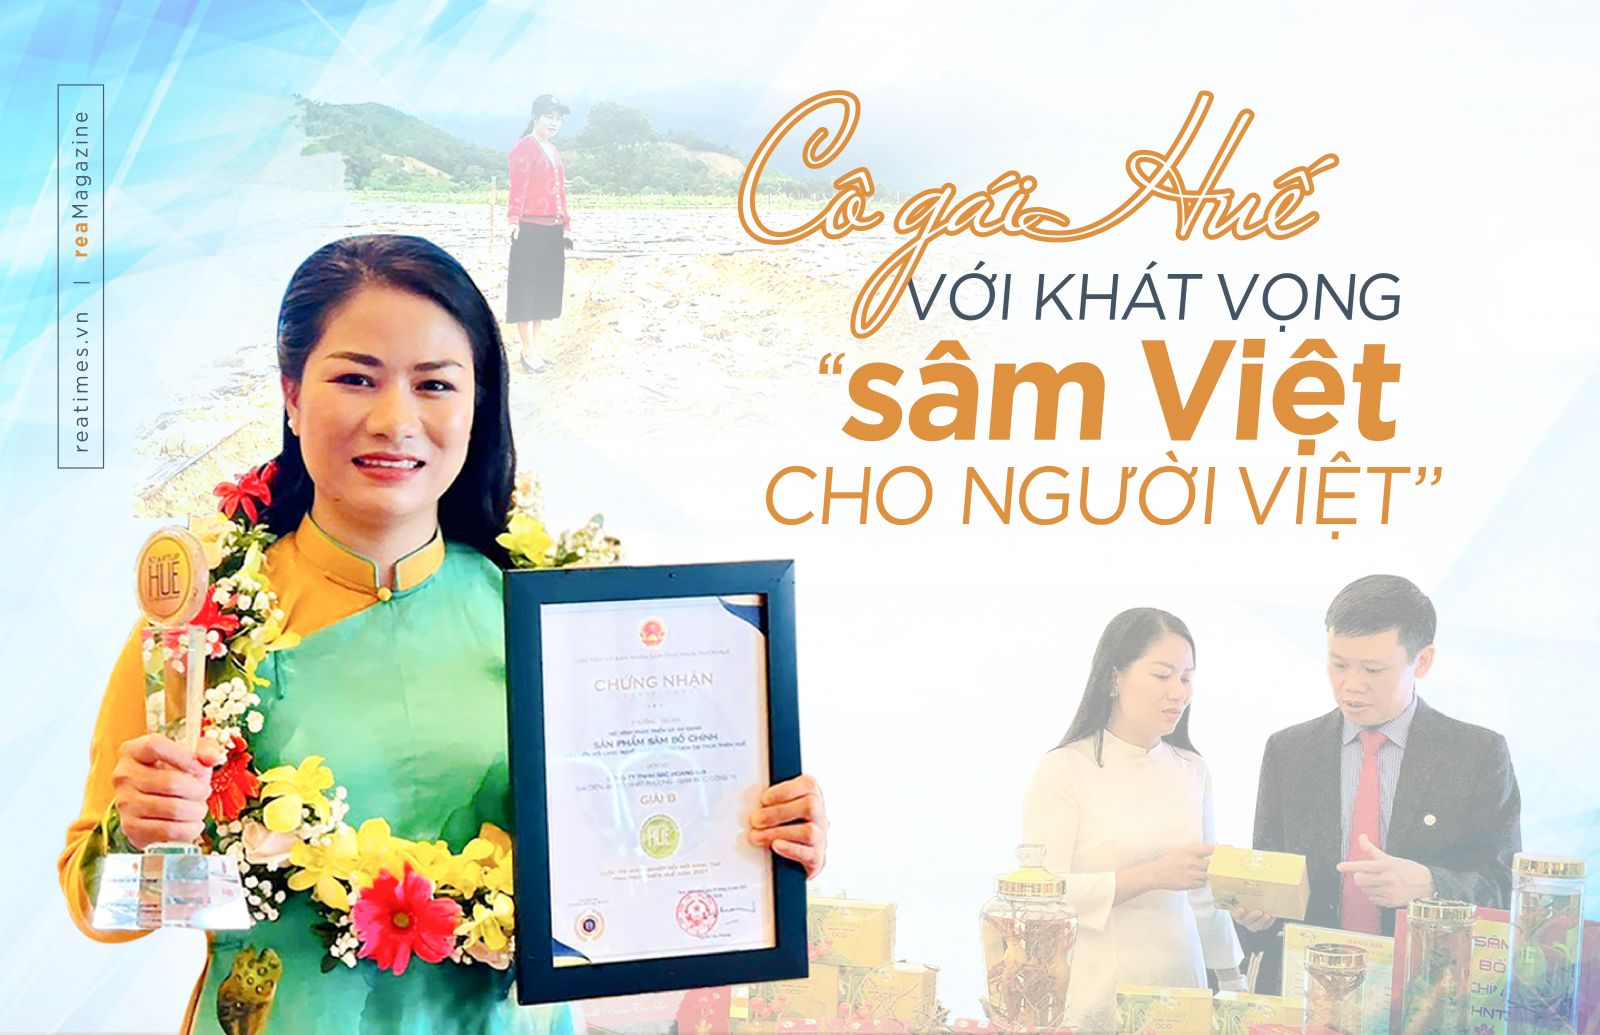 Cô gái Huế với khát vọng “sâm Việt cho người Việt”